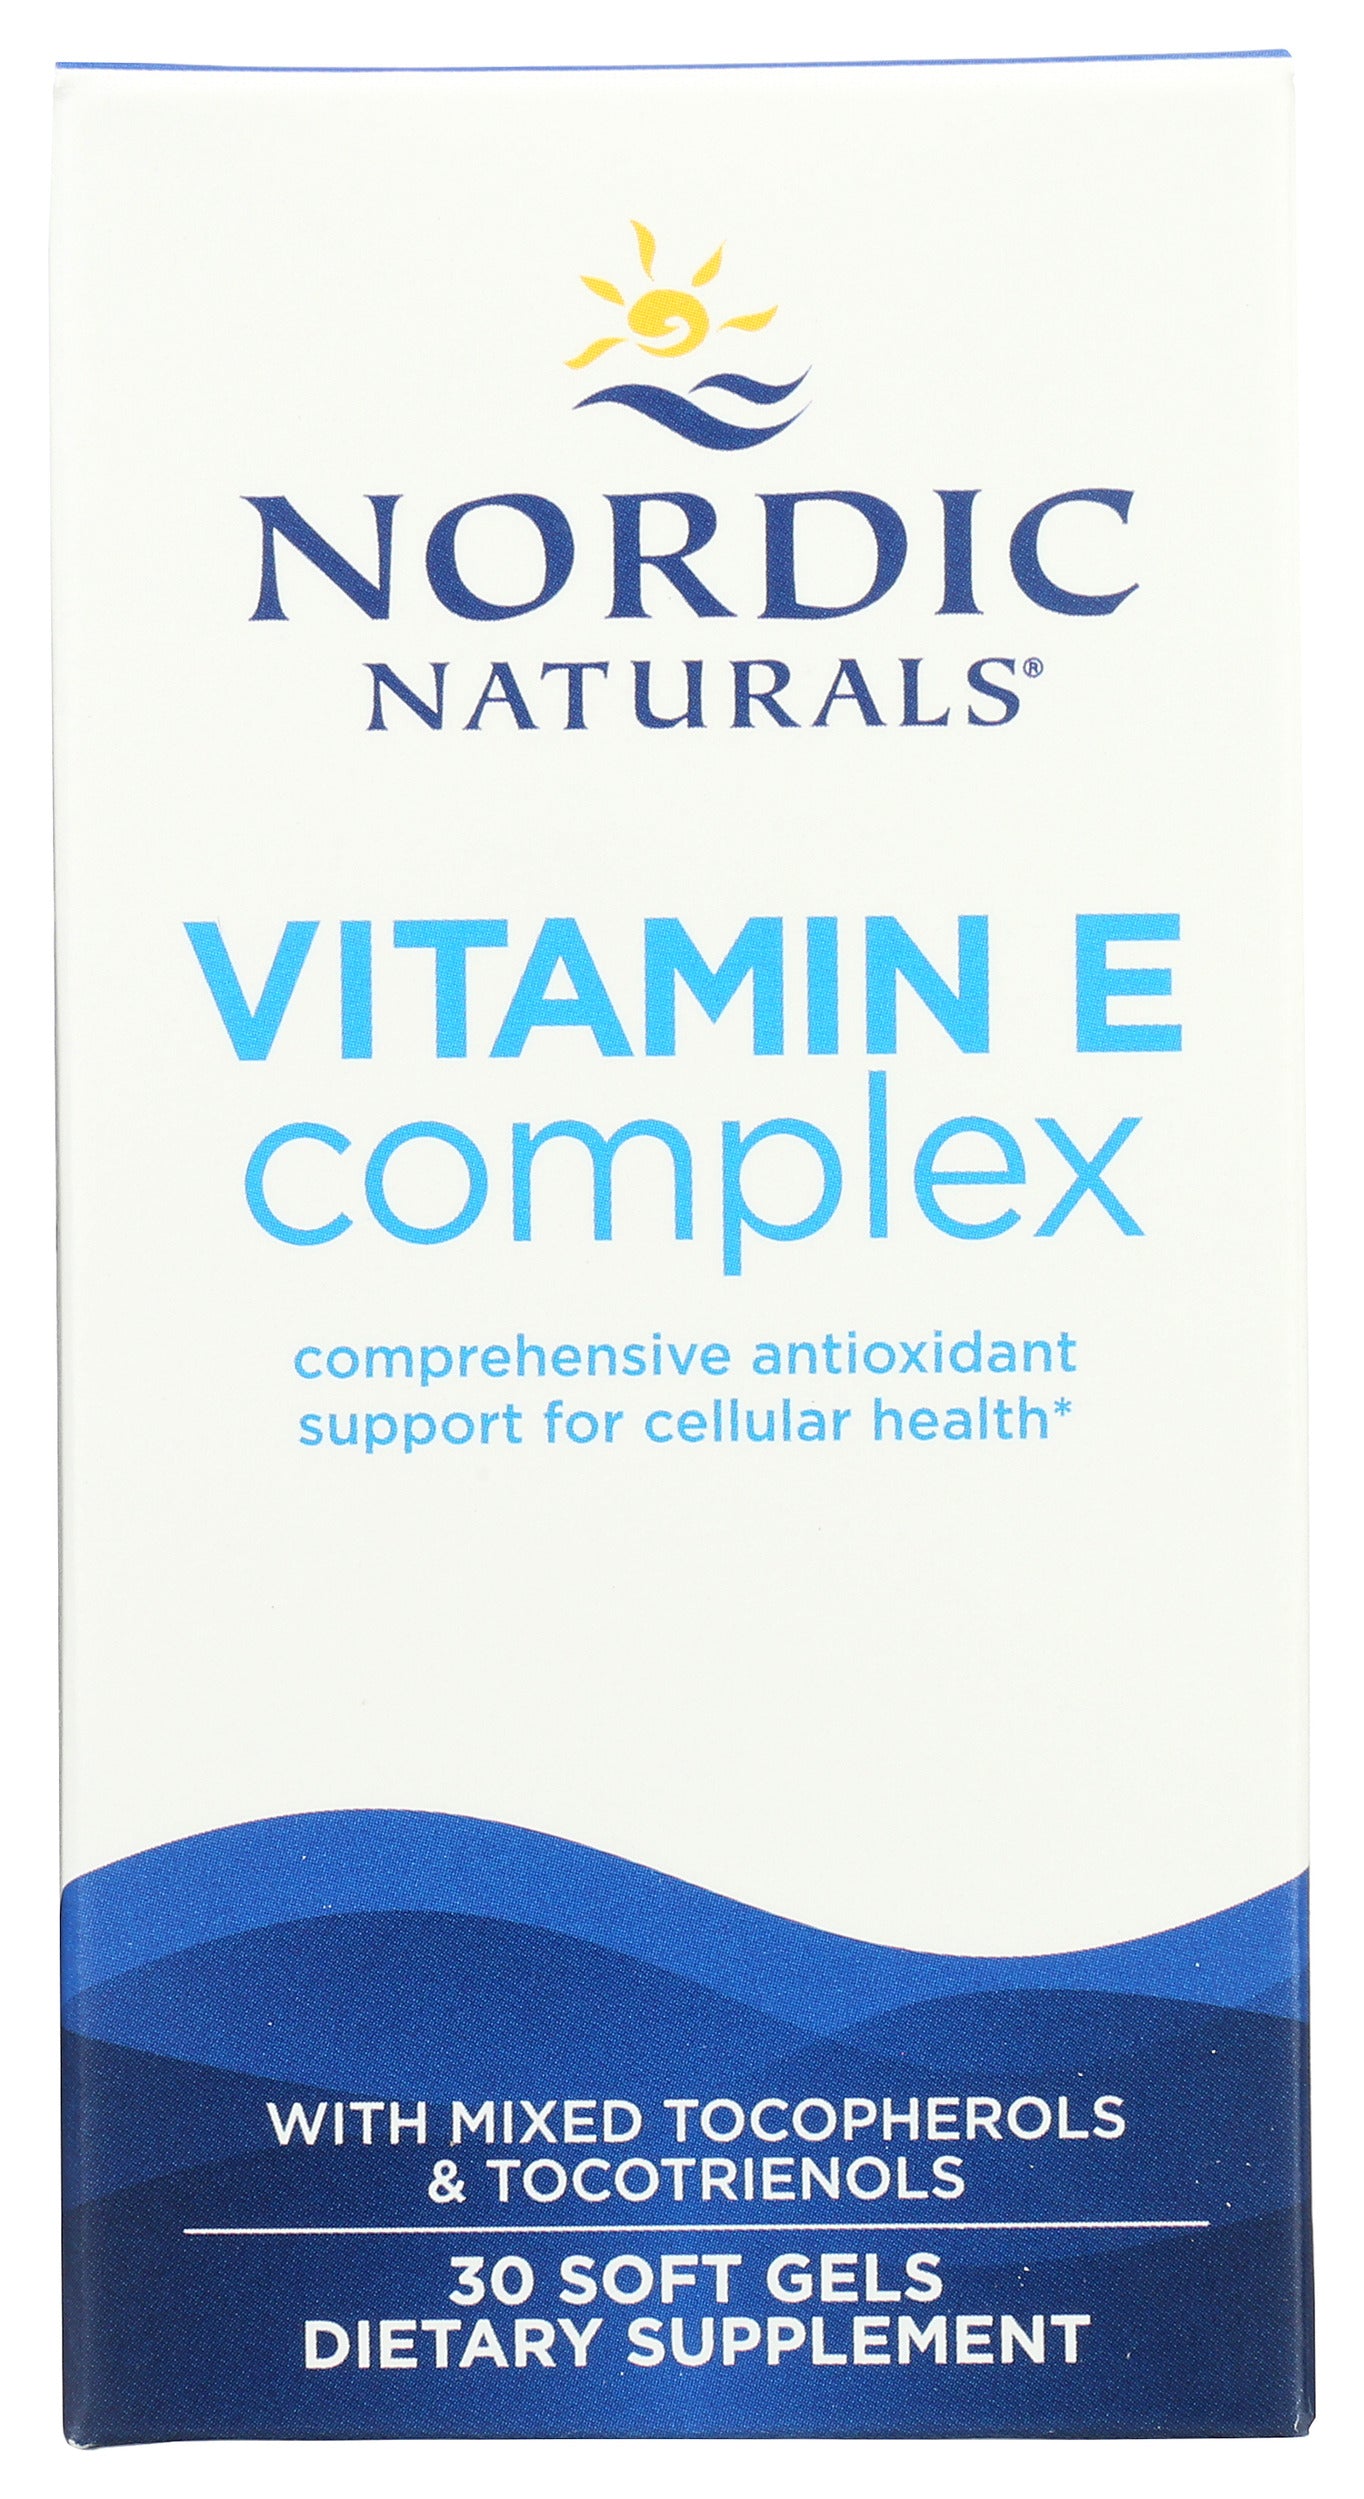 Nordic Naturals Vitamin E Complex 30 Soft Gels Front of Box